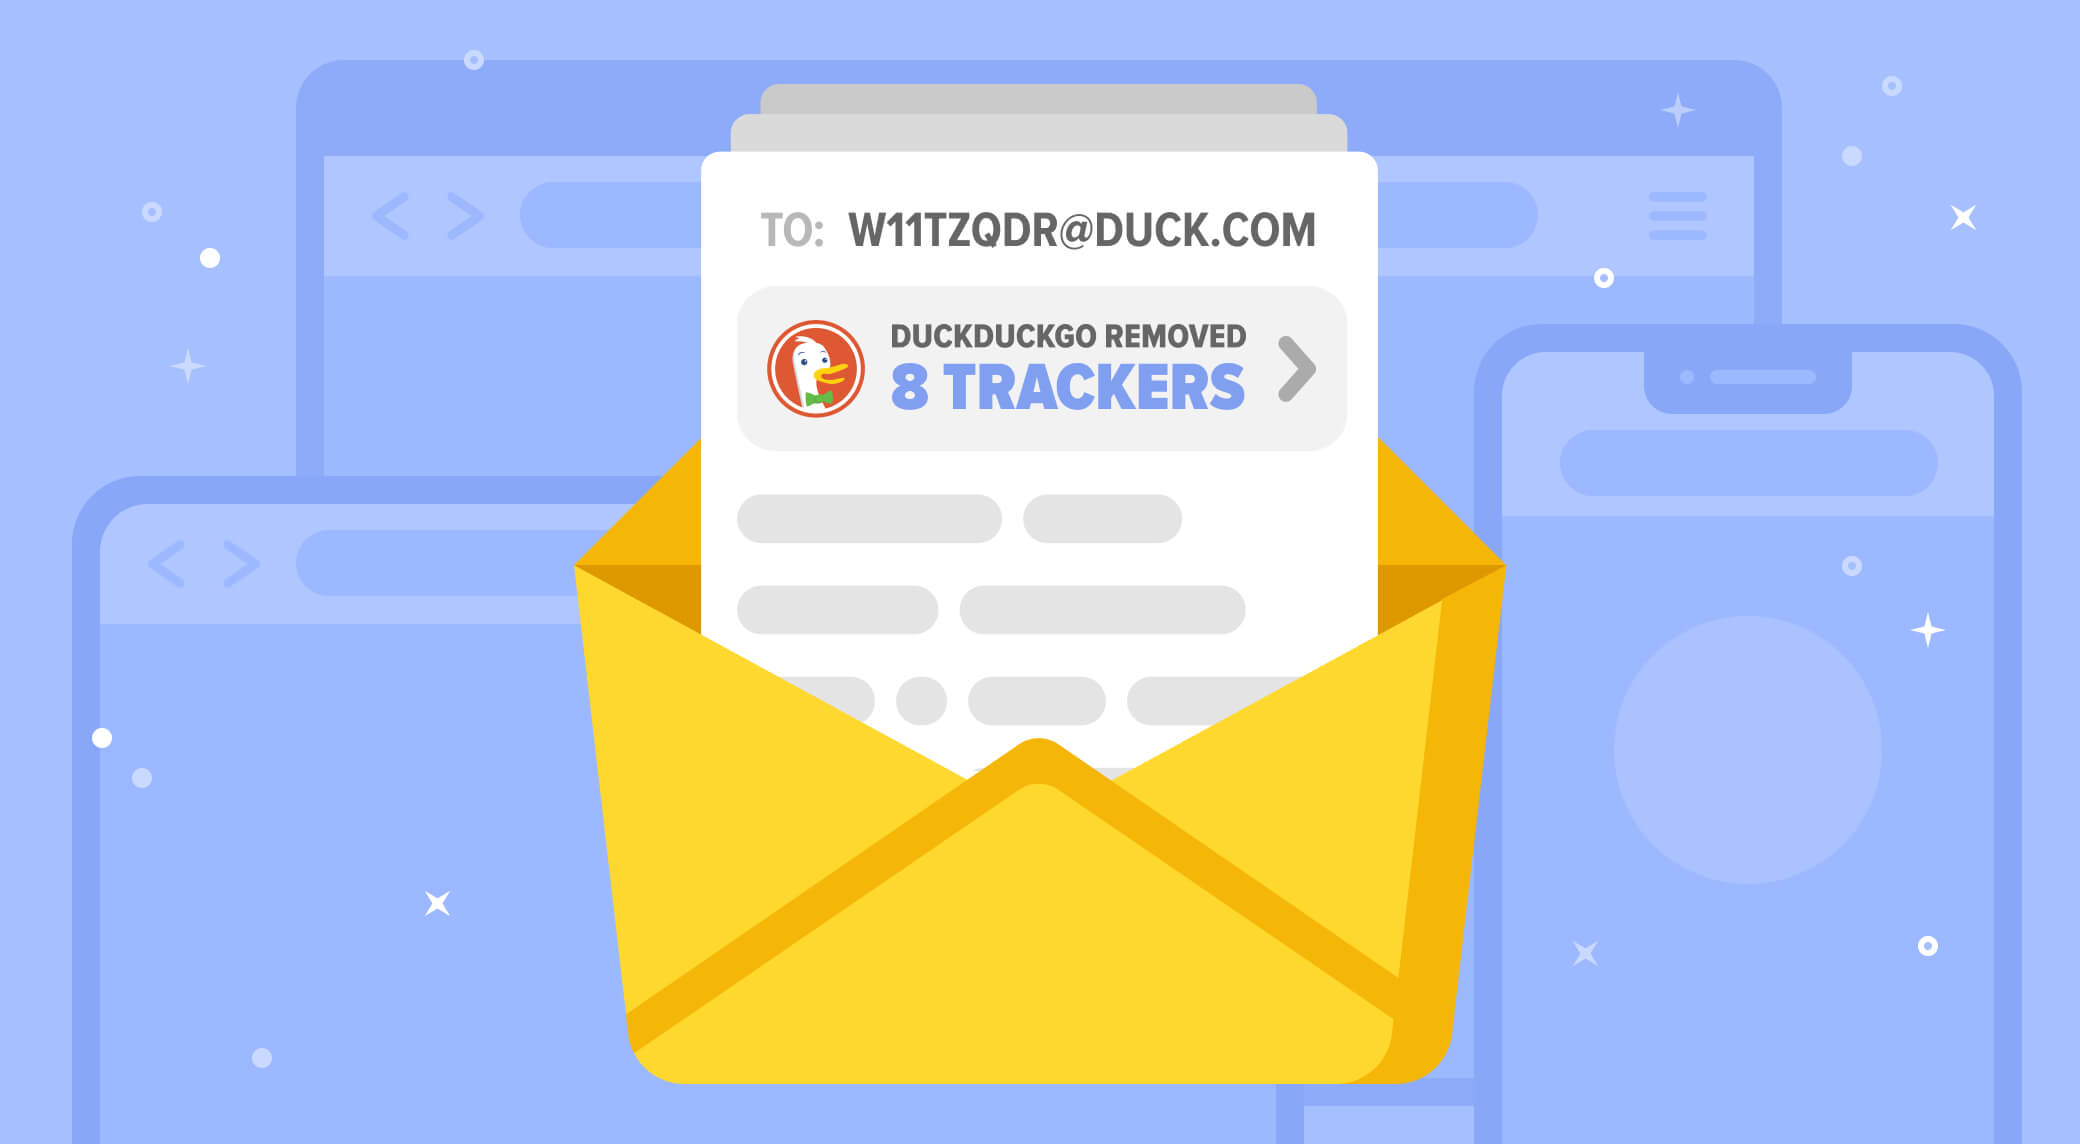 Voici comment récupérer votre alias @duck.com pour que DuckDuckGo protège vos e-mails